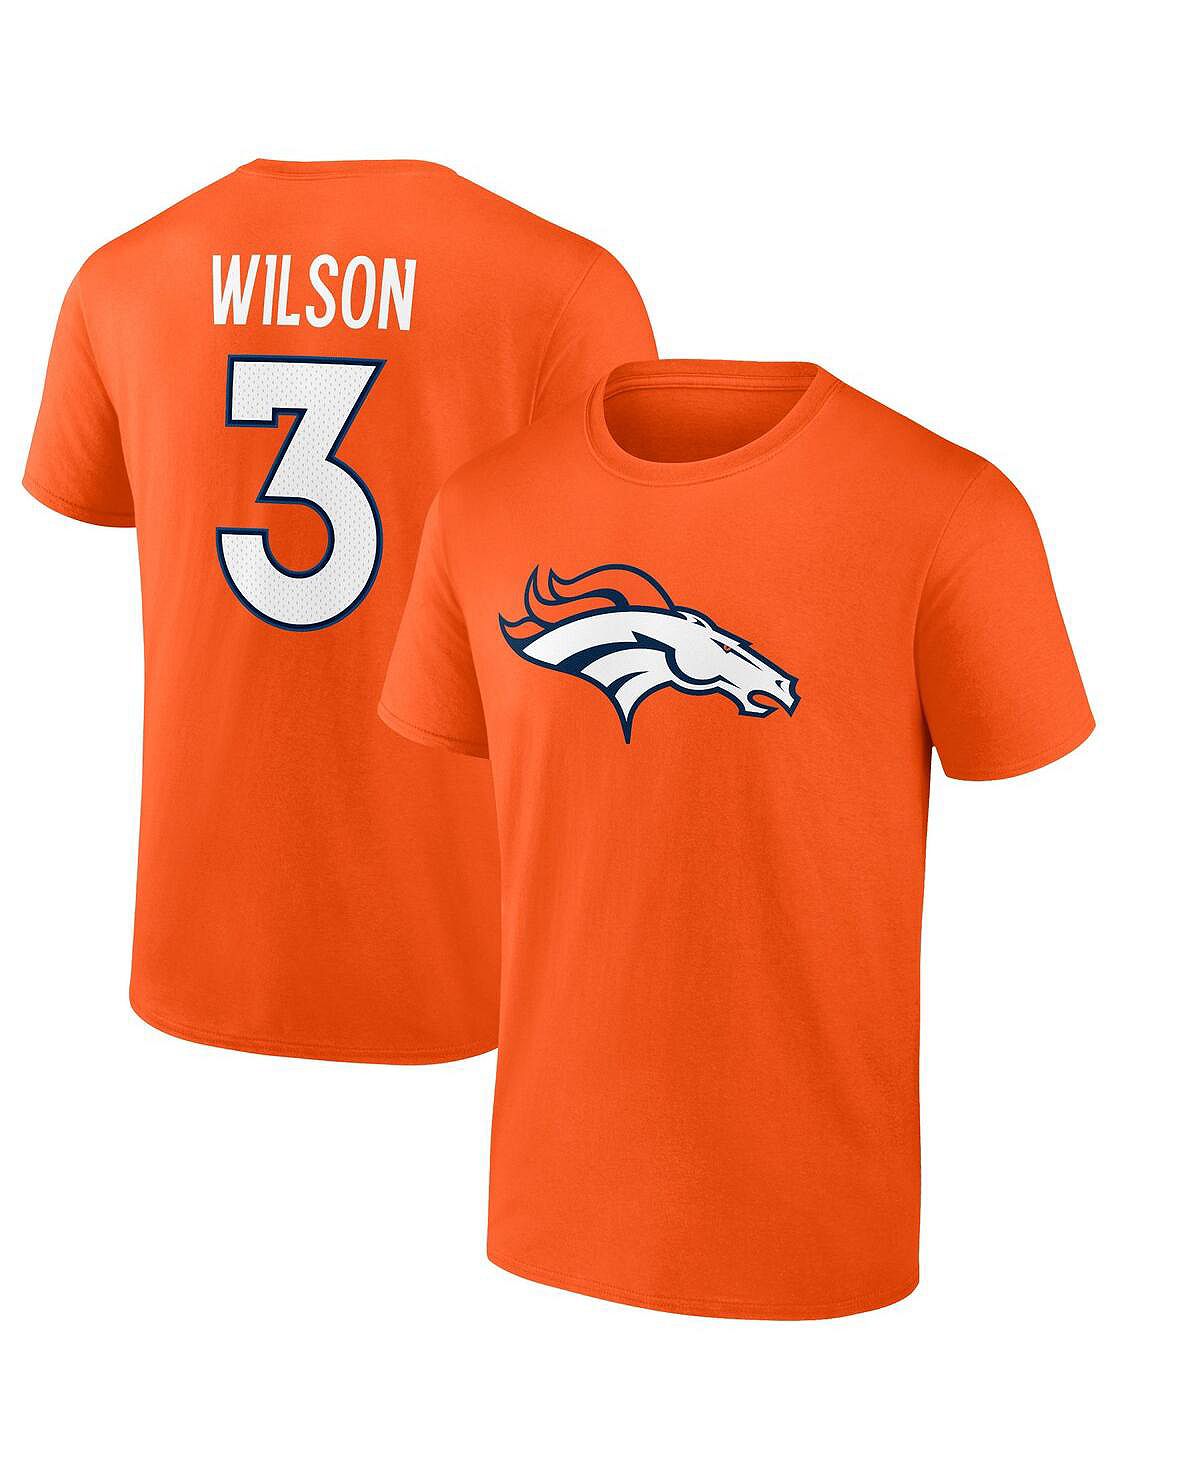 Мужская футболка с именем и номером игрока Russell Wilson оранжевого цвета Denver Broncos Fanatics